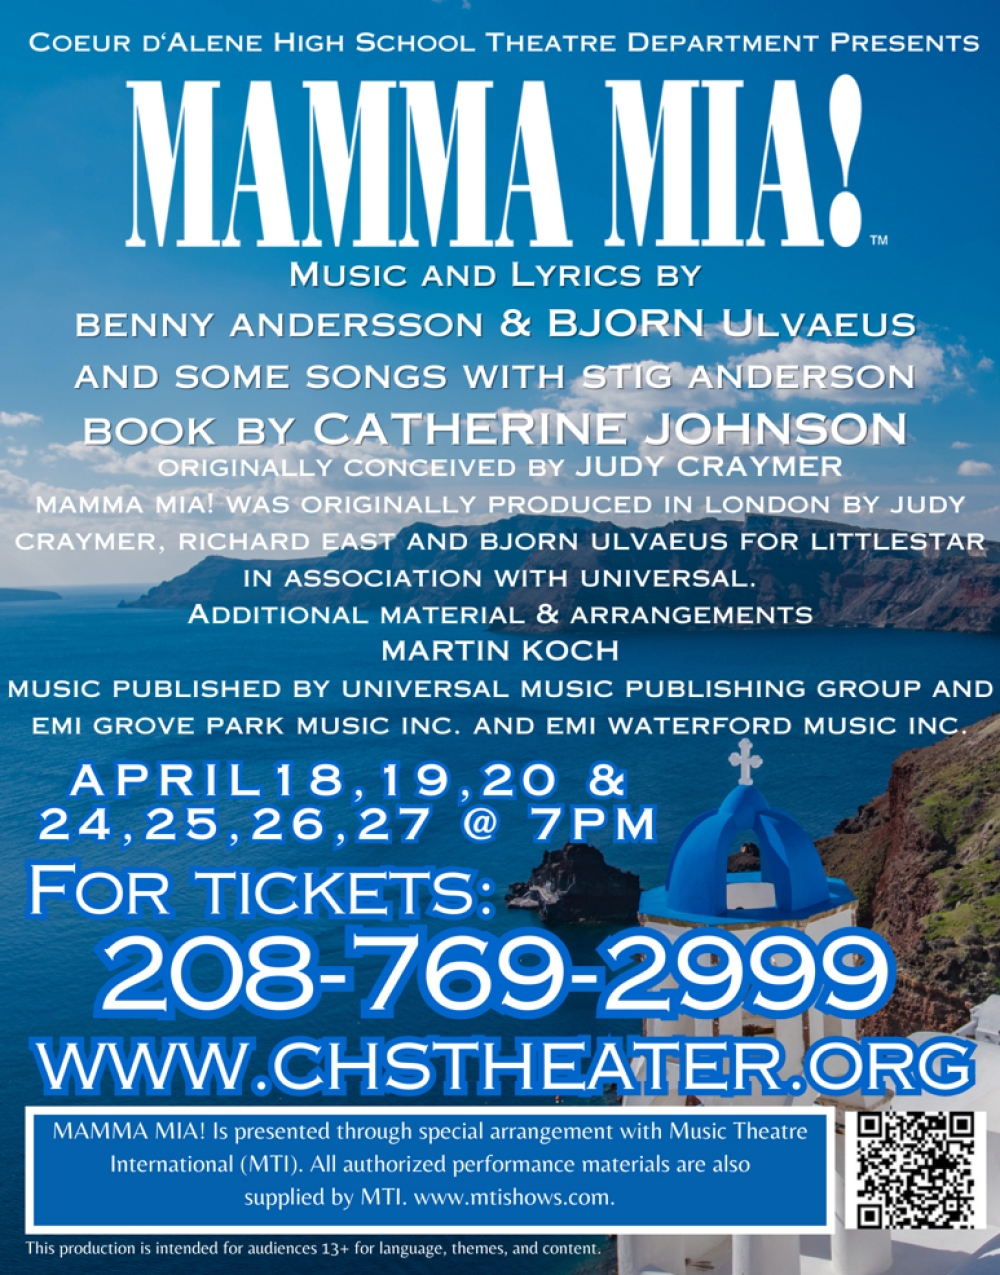 Mamma Mia! at Coeur d'Alene High School Theatre